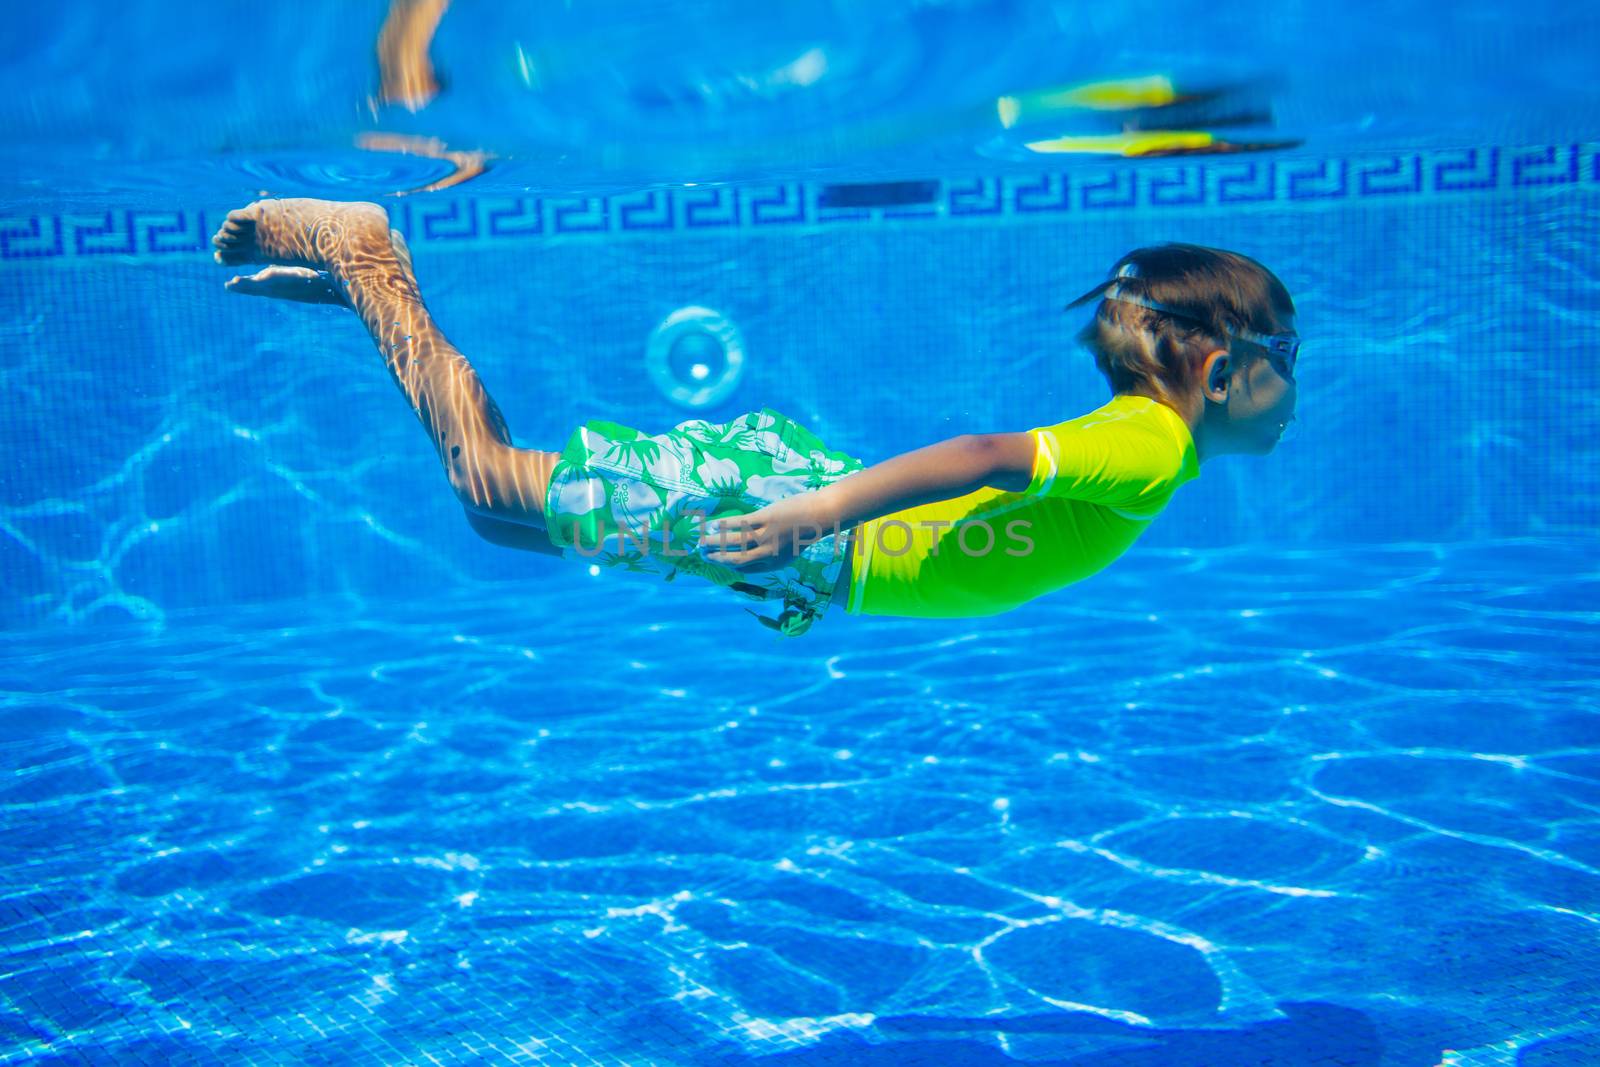 Underwater happy little boy in swimming pool